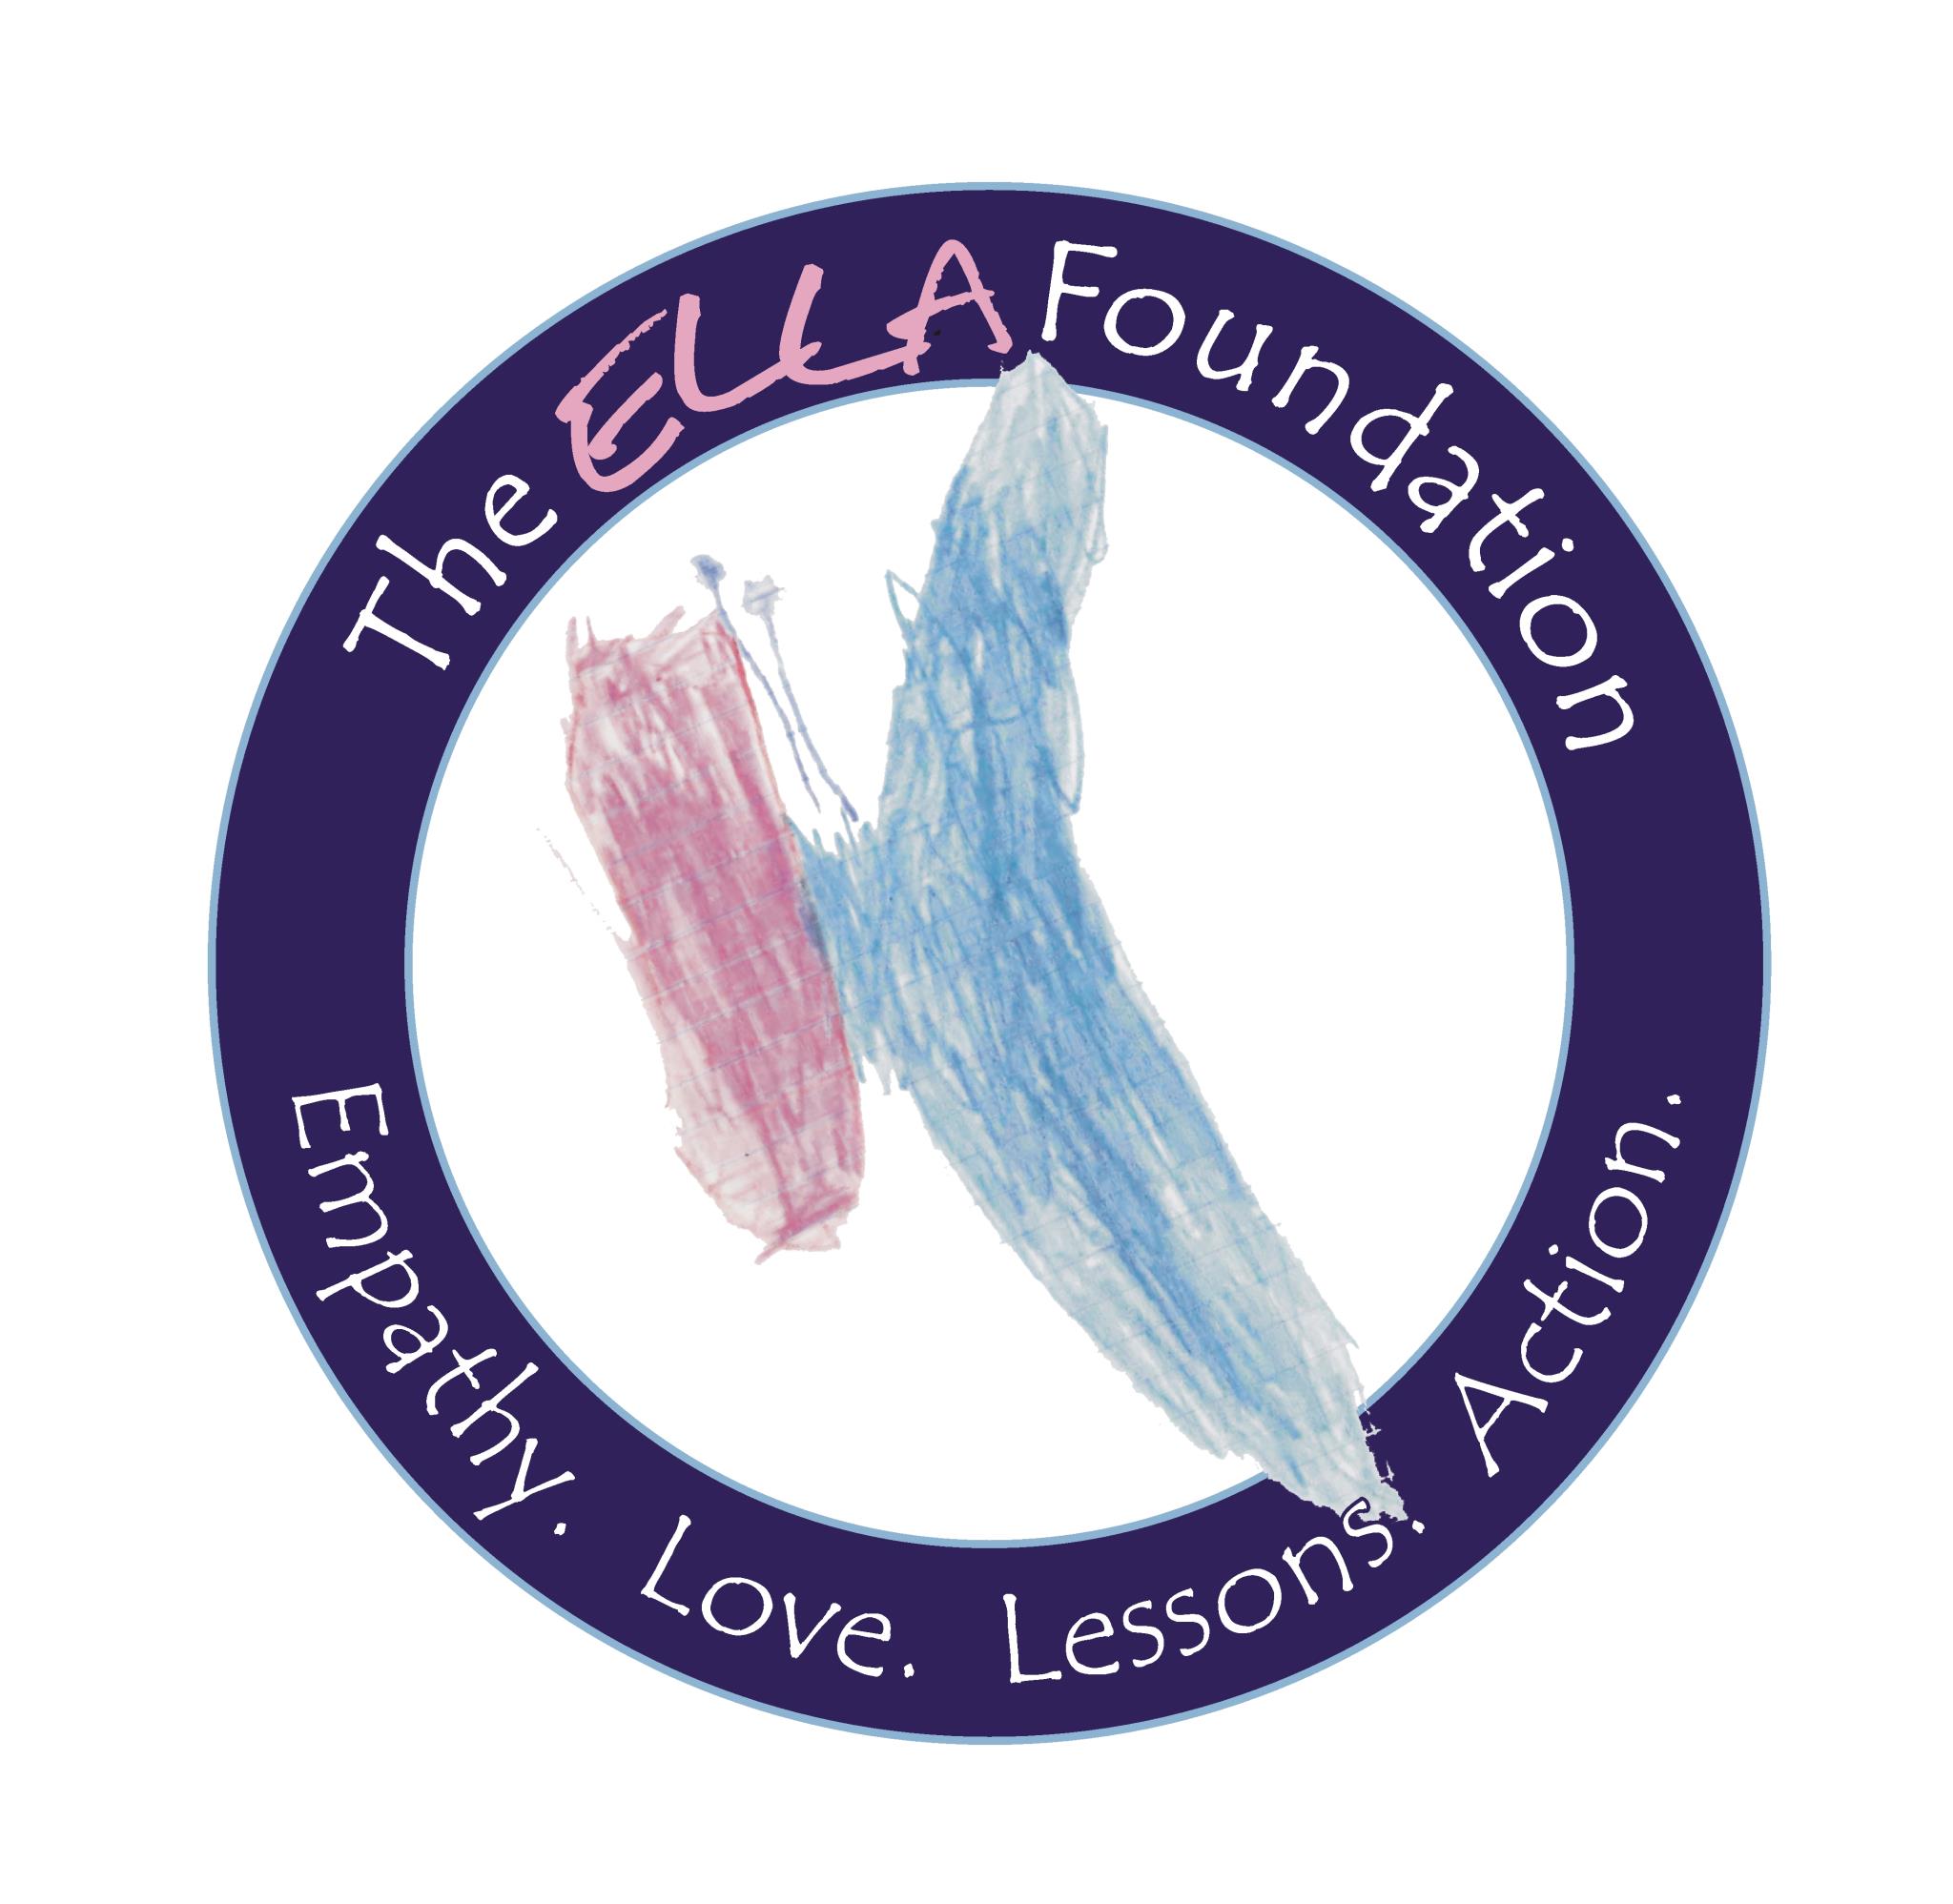 The ELLA FOUNDATION logo